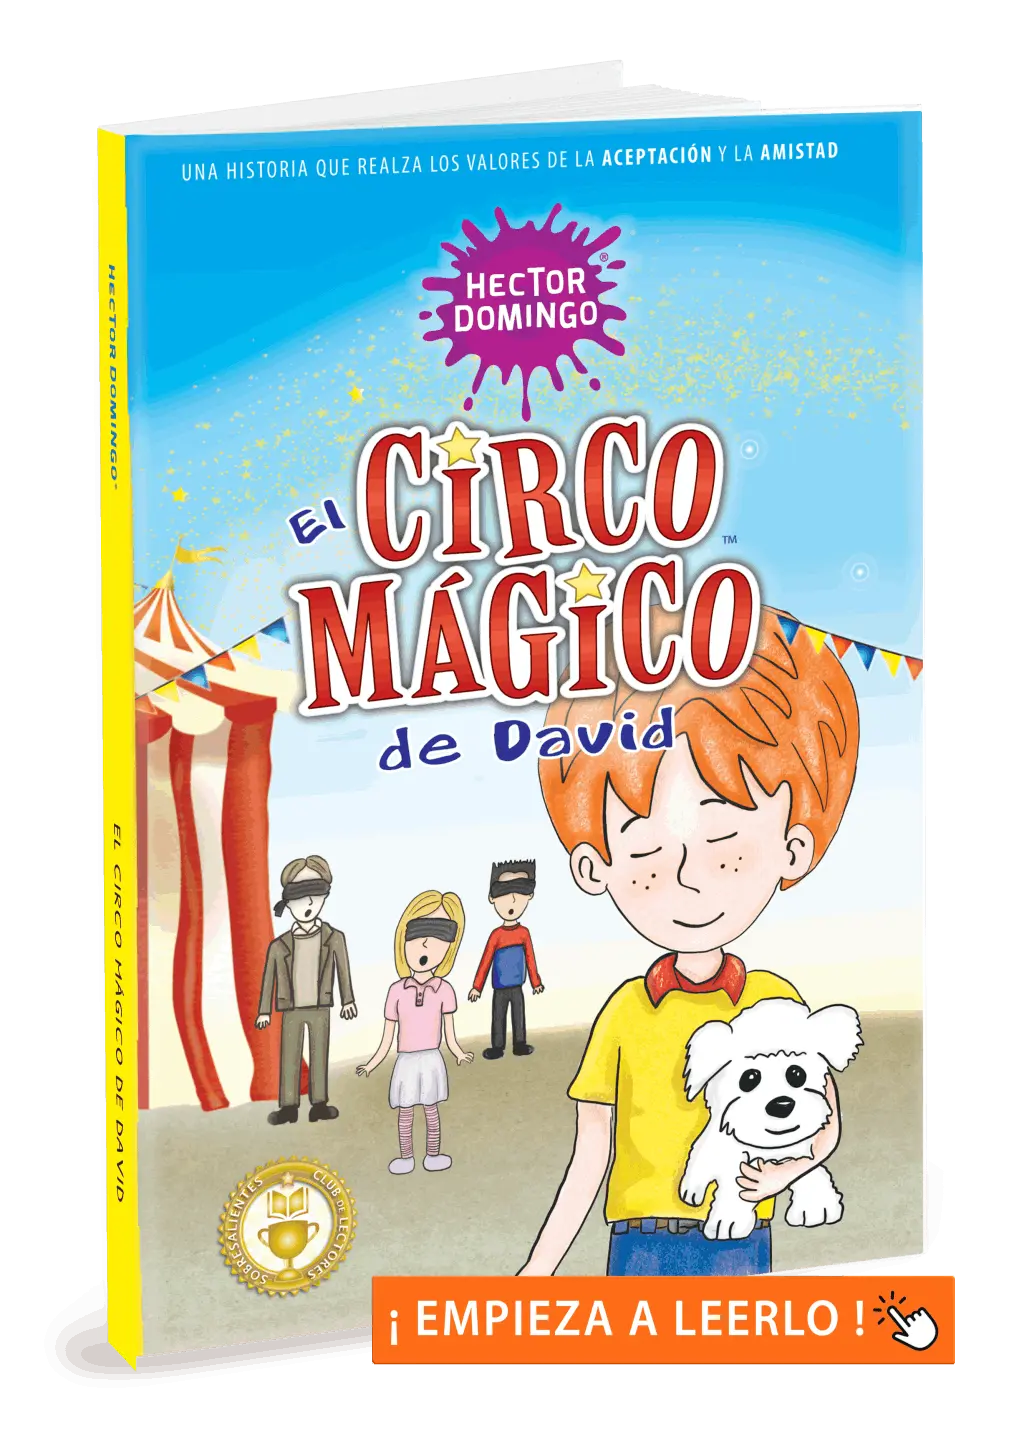 El circo mágico de David, por Héctor Domingo. Libros infantiles y juveniles.